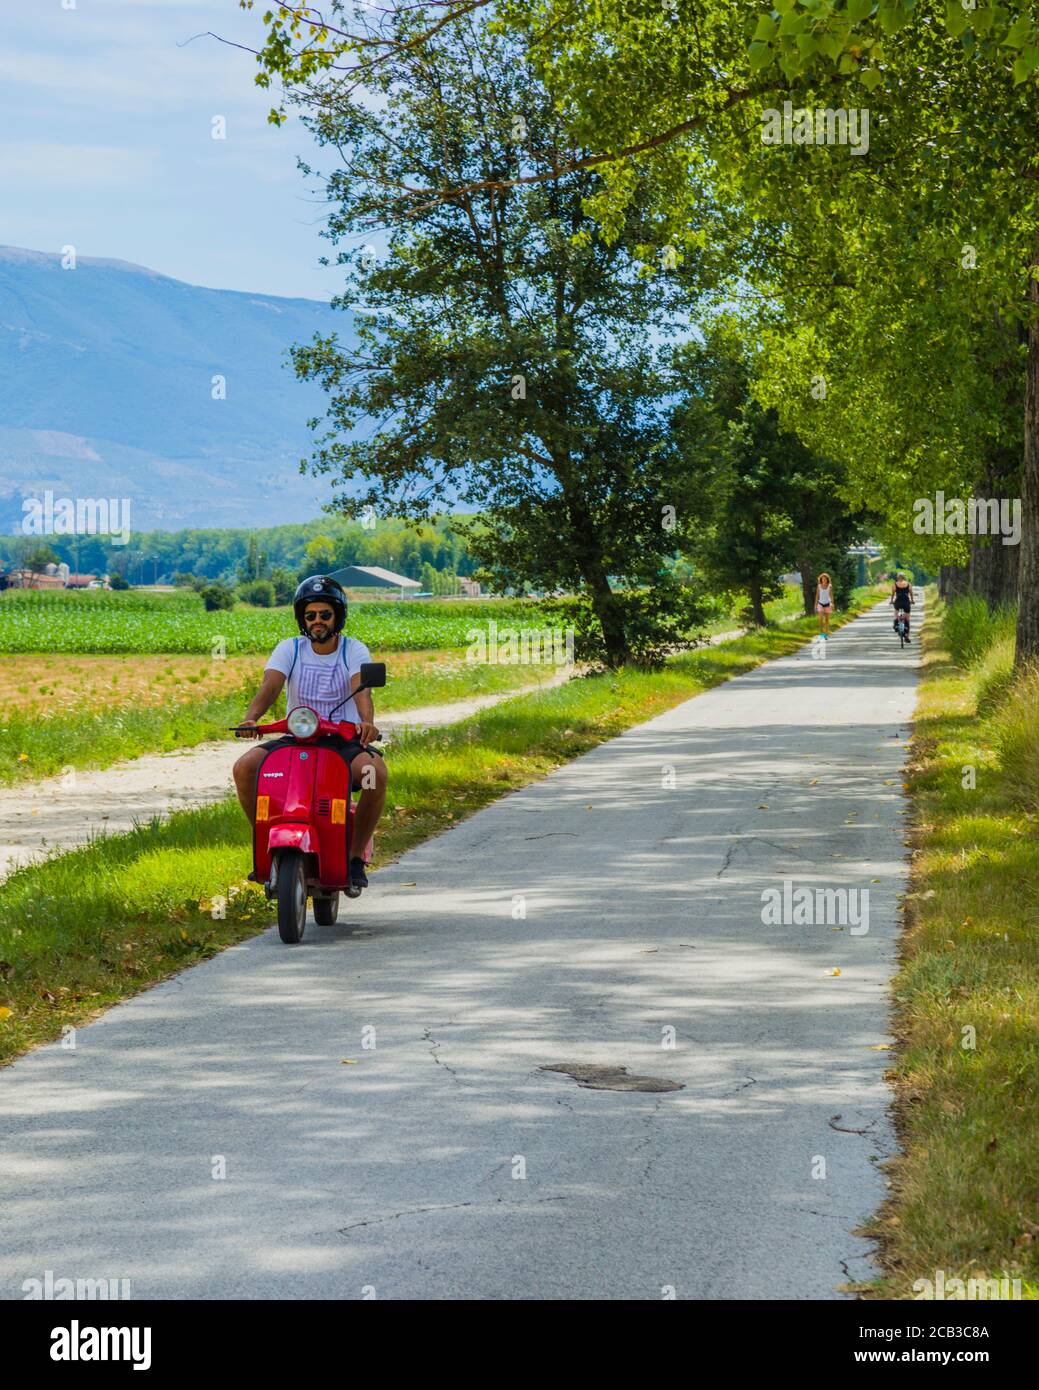 Ein Mann auf einem roten Roller fährt auf einer kleinen Straße durch die Aue des Flusses Topino, in der Nähe von Bevagna, Umbrien, Italien Land Stockfoto